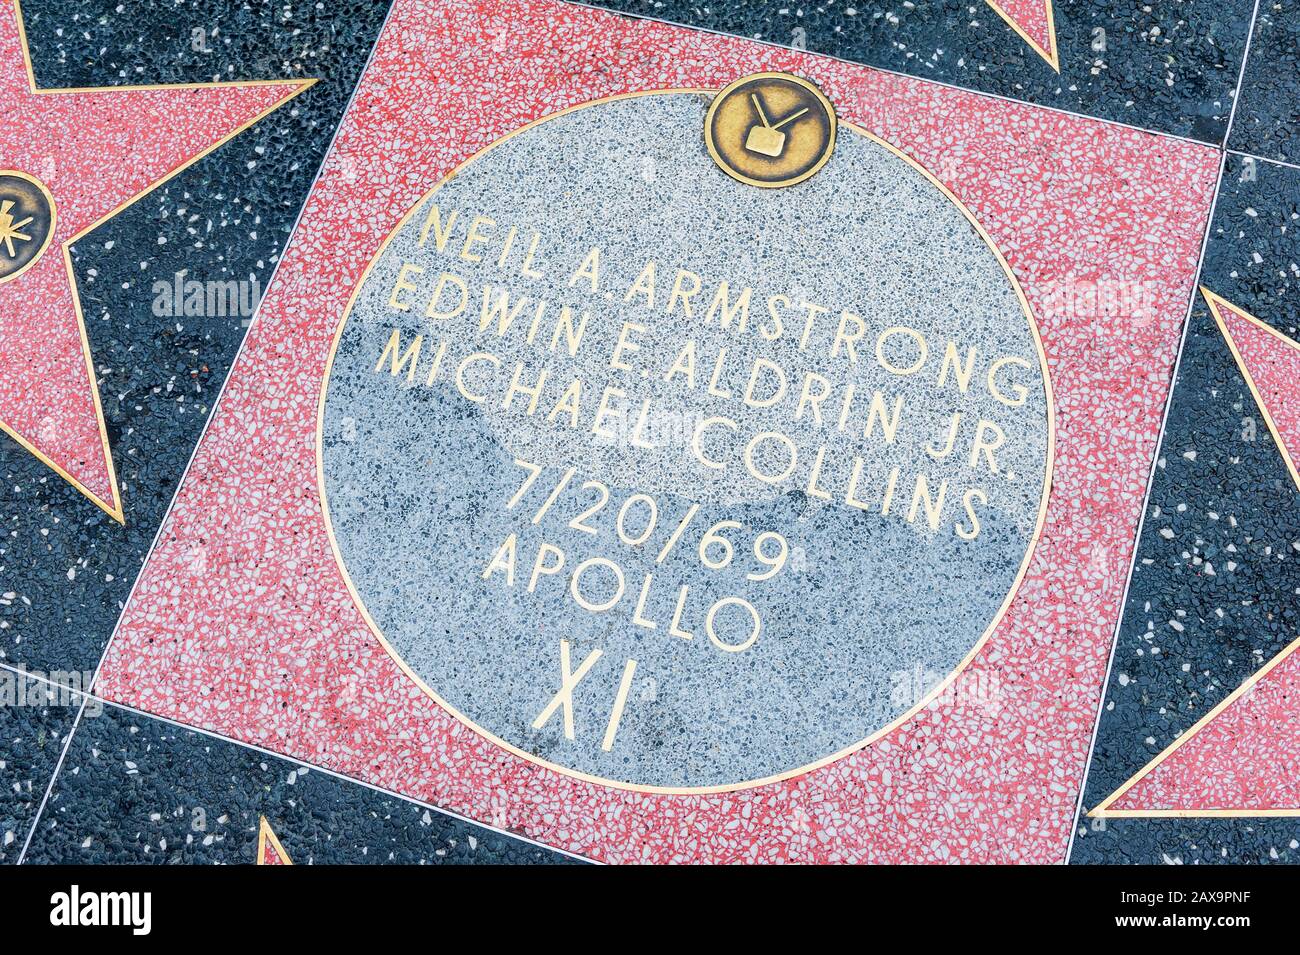 Star de l'équipage d'atterrissage Apollo XI Moon de 1969 sur le Hollywood Walk of Fame à Hollywood, Los Angeles, Californie, États-Unis. Banque D'Images